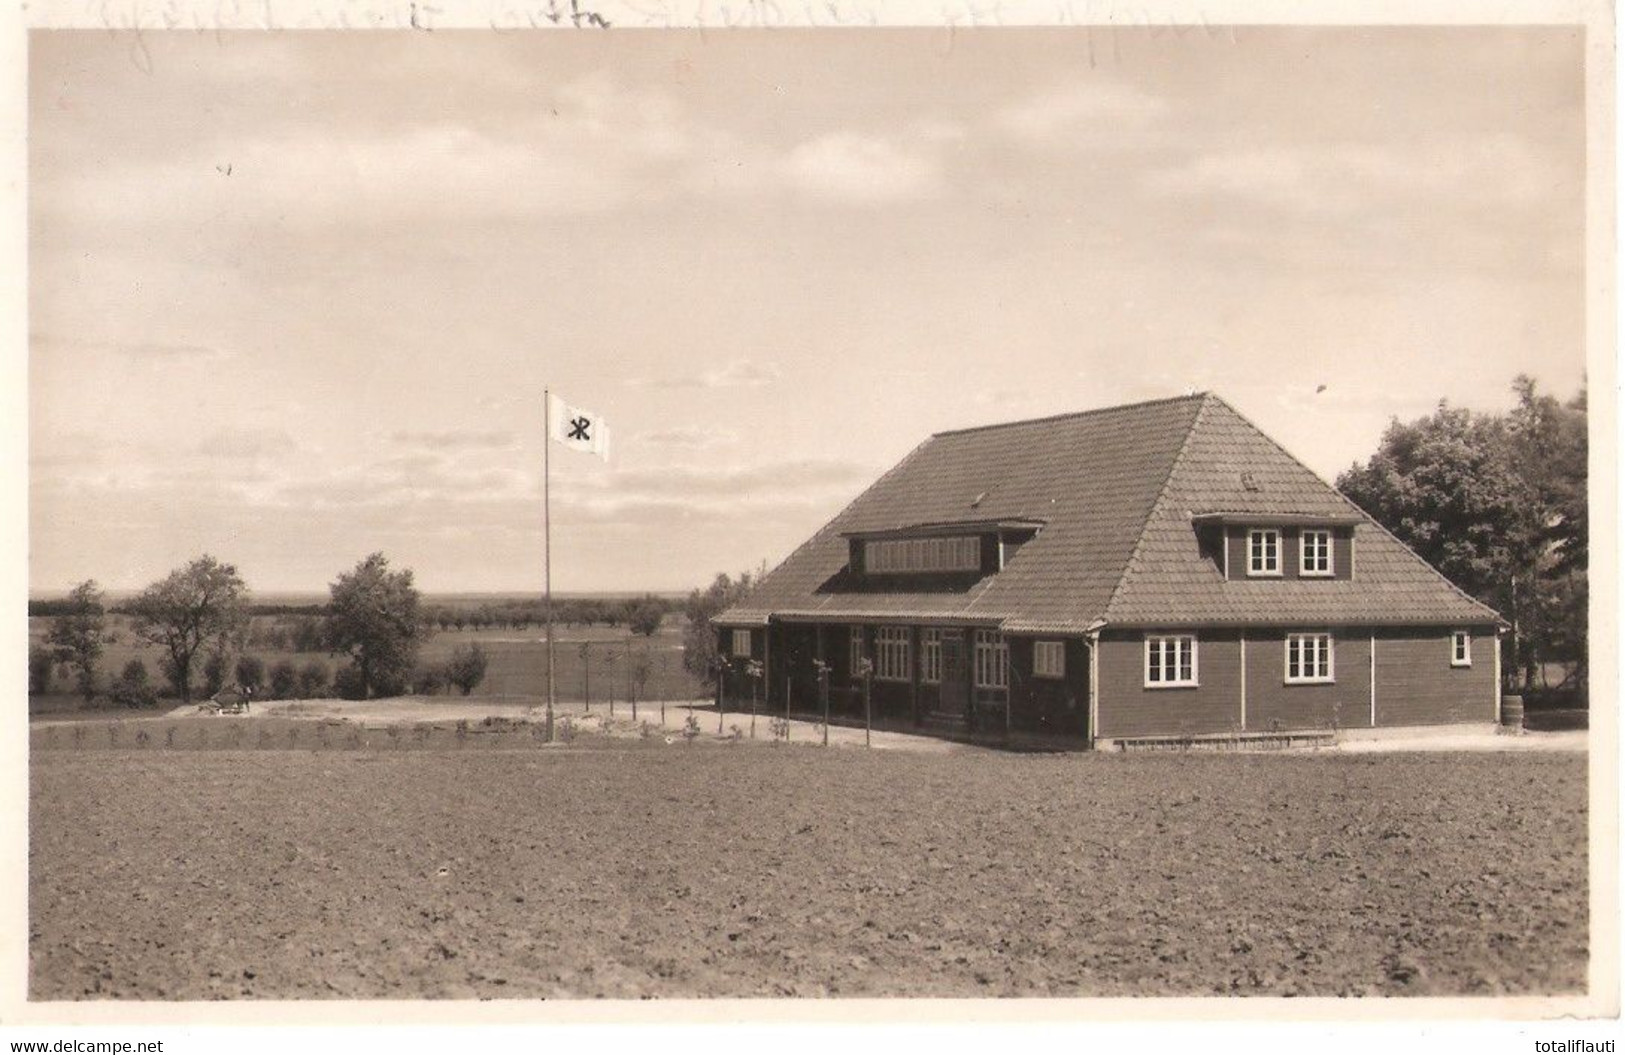 PÖTENITZ Dassow Mecklenburg CVJM Ostseeheim Christlicher Verein Junger Männer Landpost Nebenstempel 7.8.1930 - Boltenhagen